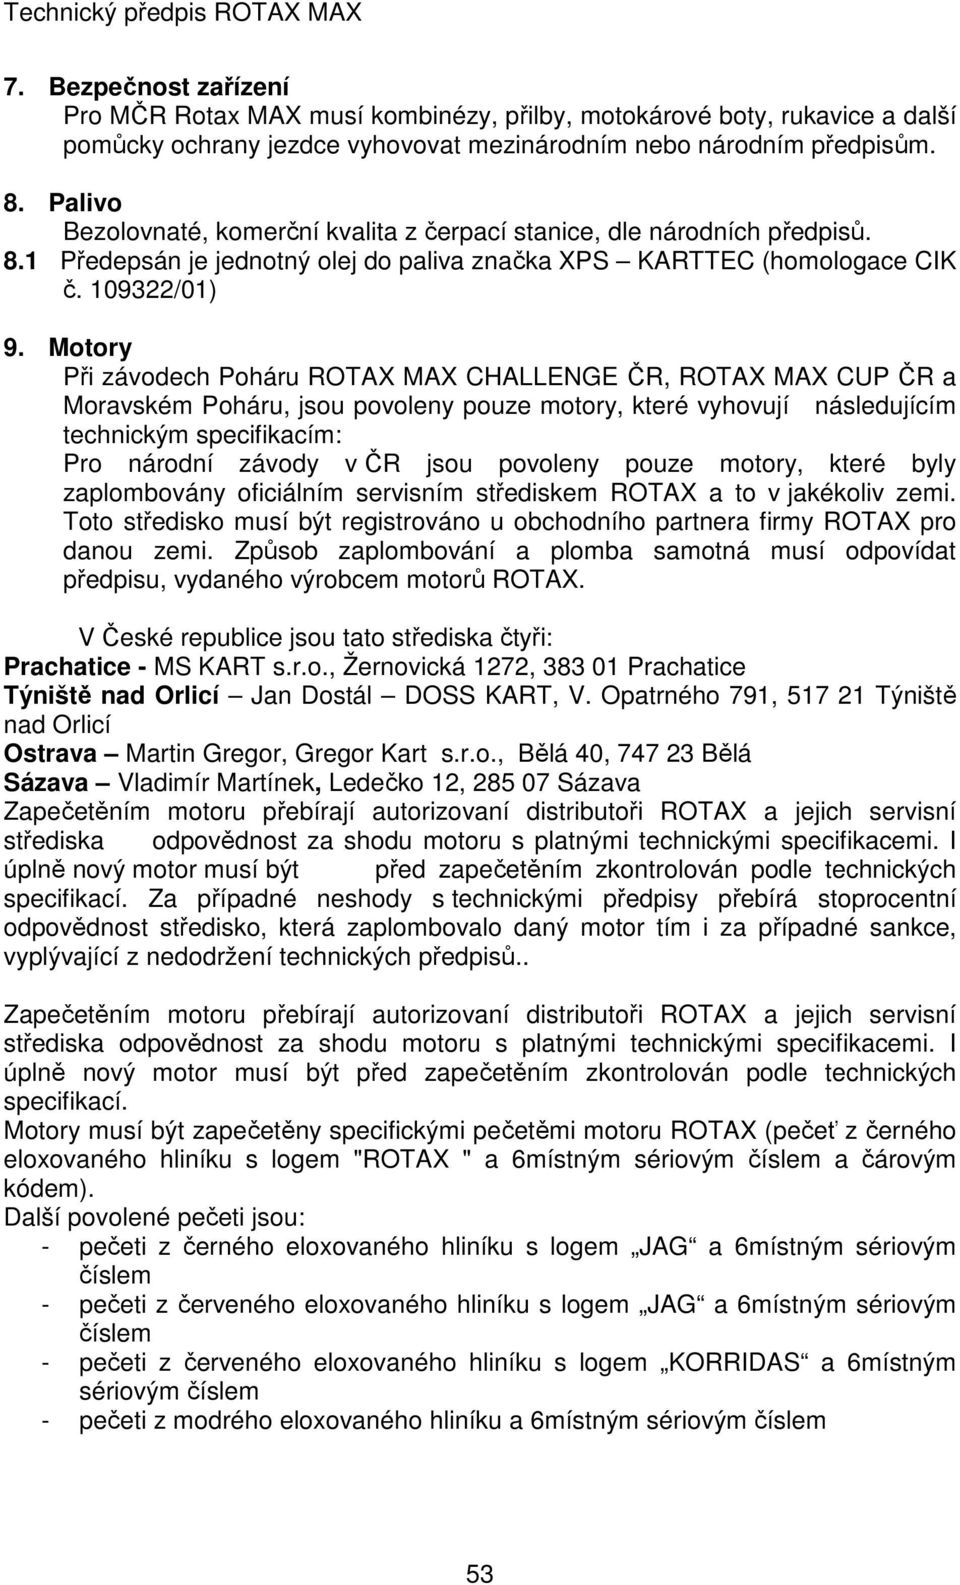 Motory Při závodech Poháru ROTAX MAX CHALLENGE ČR, ROTAX MAX CUP ČR a Moravském Poháru, jsou povoleny pouze motory, které vyhovují následujícím technickým specifikacím: Pro národní závody v ČR jsou